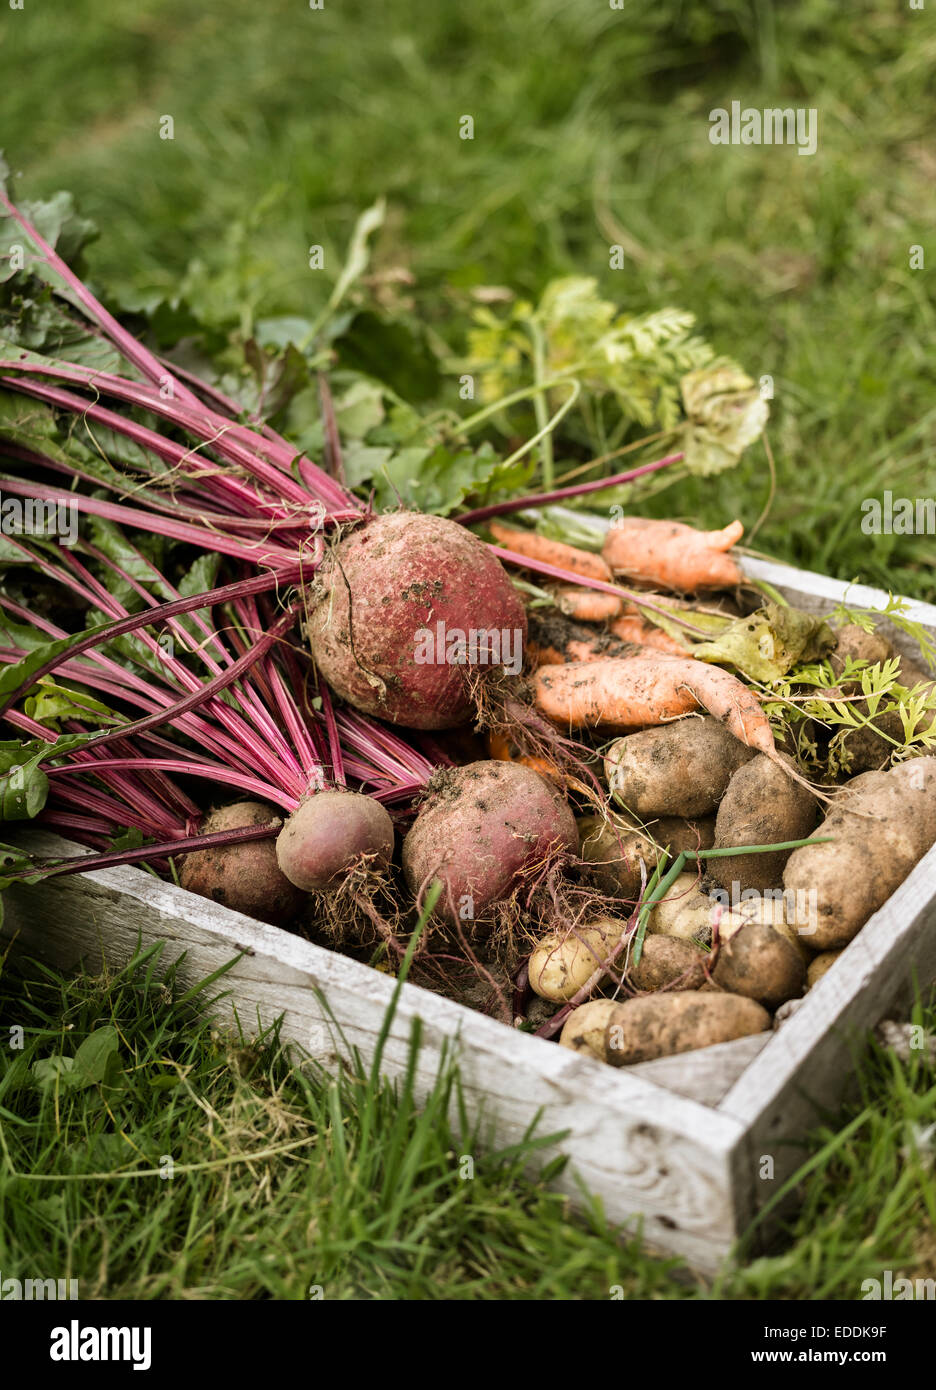 Hölzerne Kiste voller nahm frisch Gemüse, wie Karotten, Rüben und Kartoffeln. Stockfoto